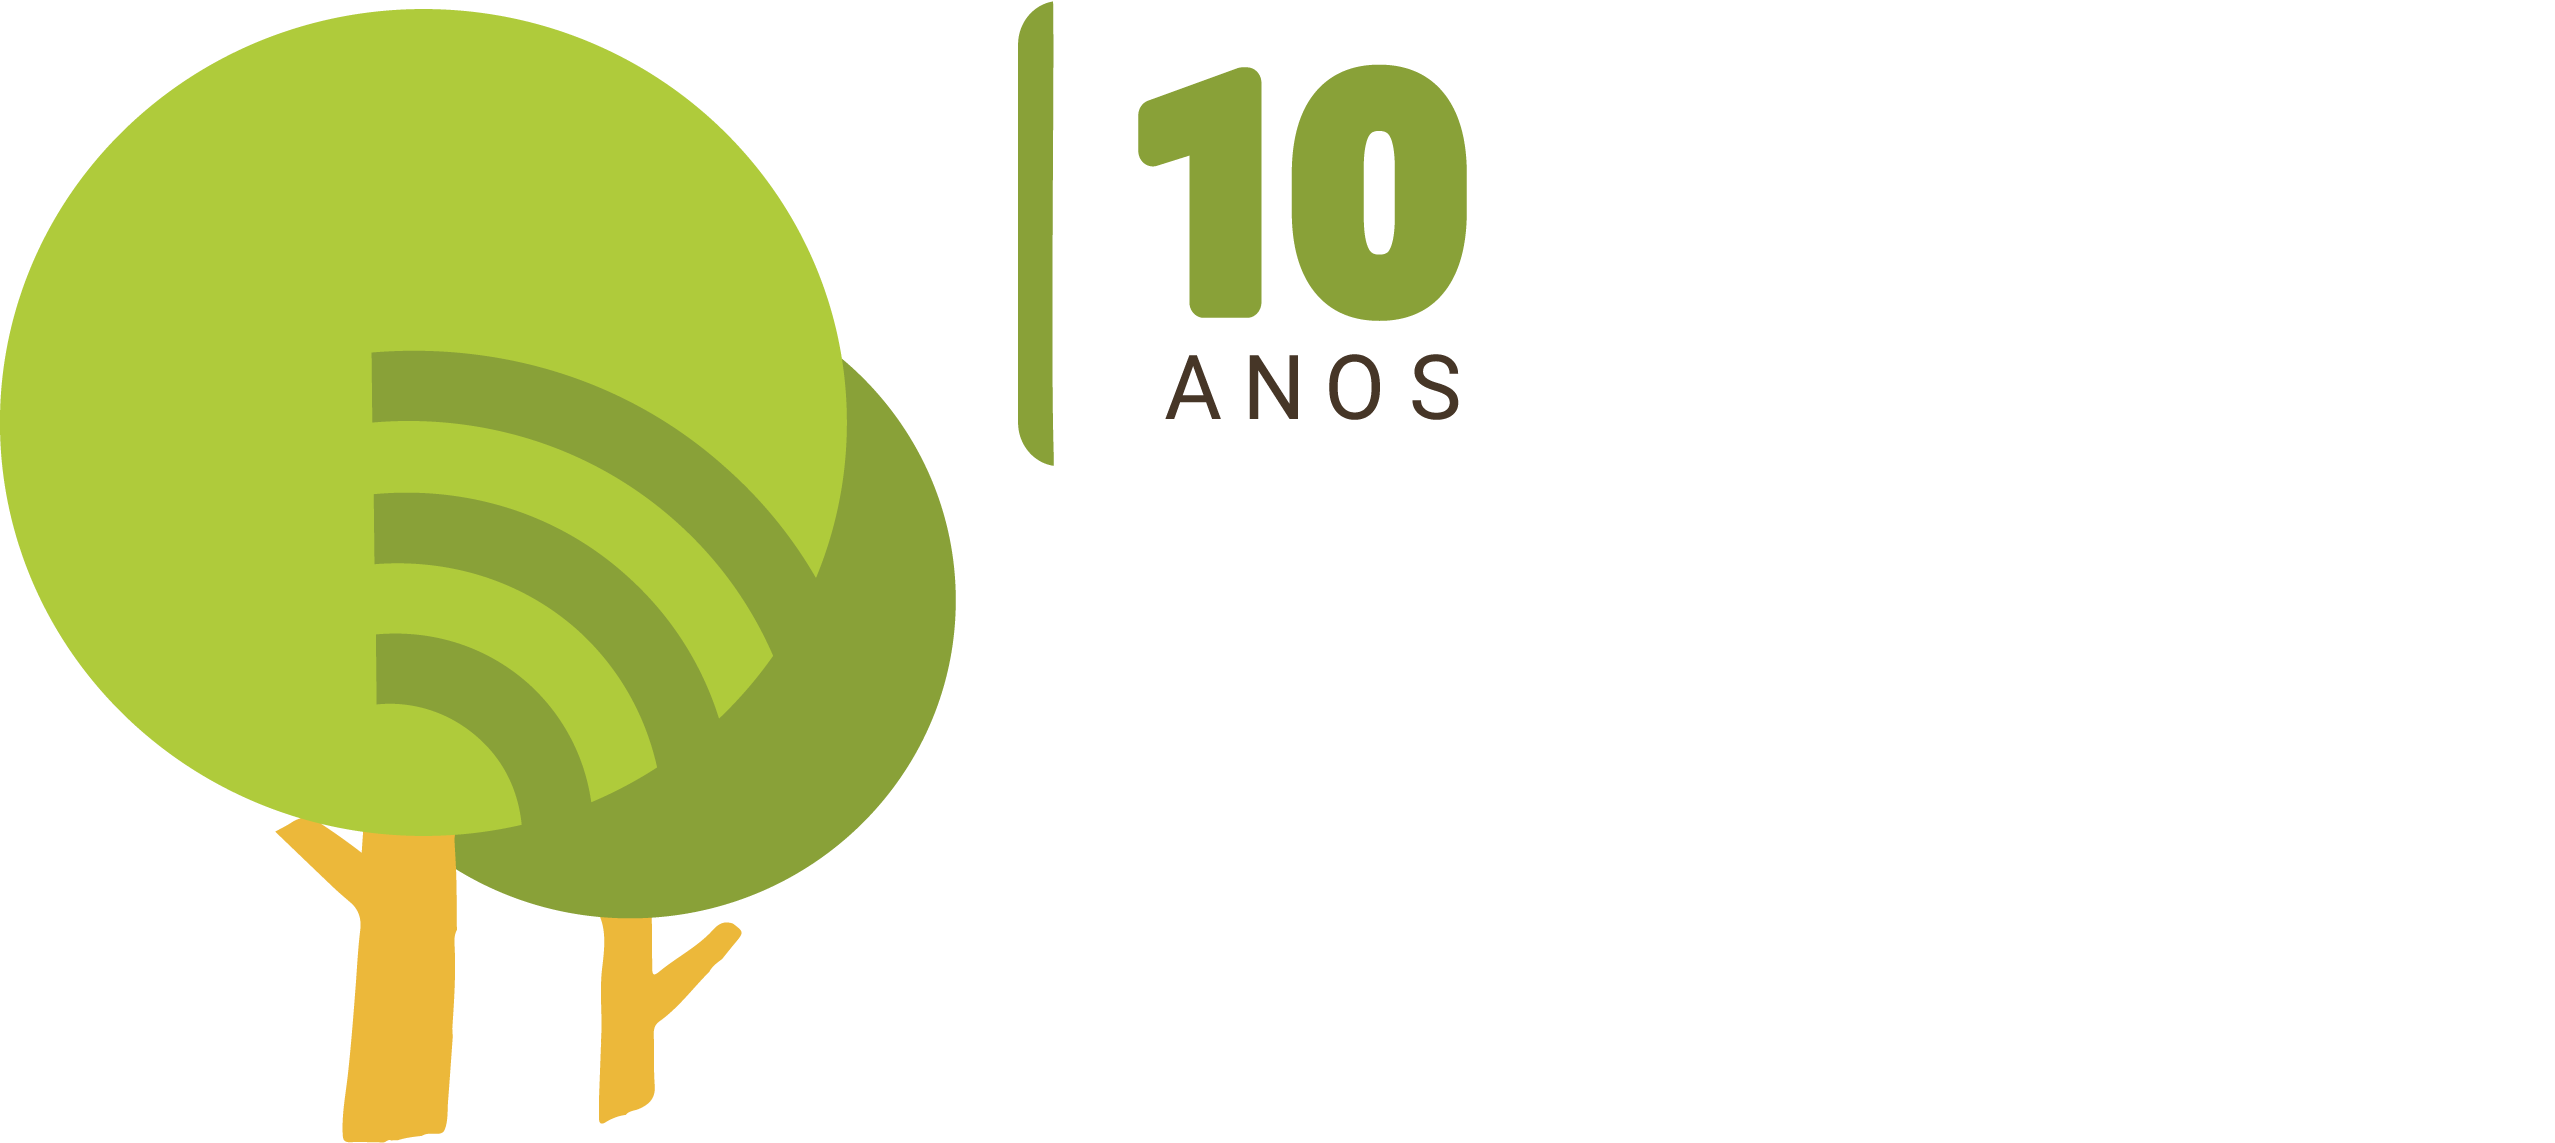 SalveOCódigoFlorestal - APPS Urbanas - Observatório do Código Florestal